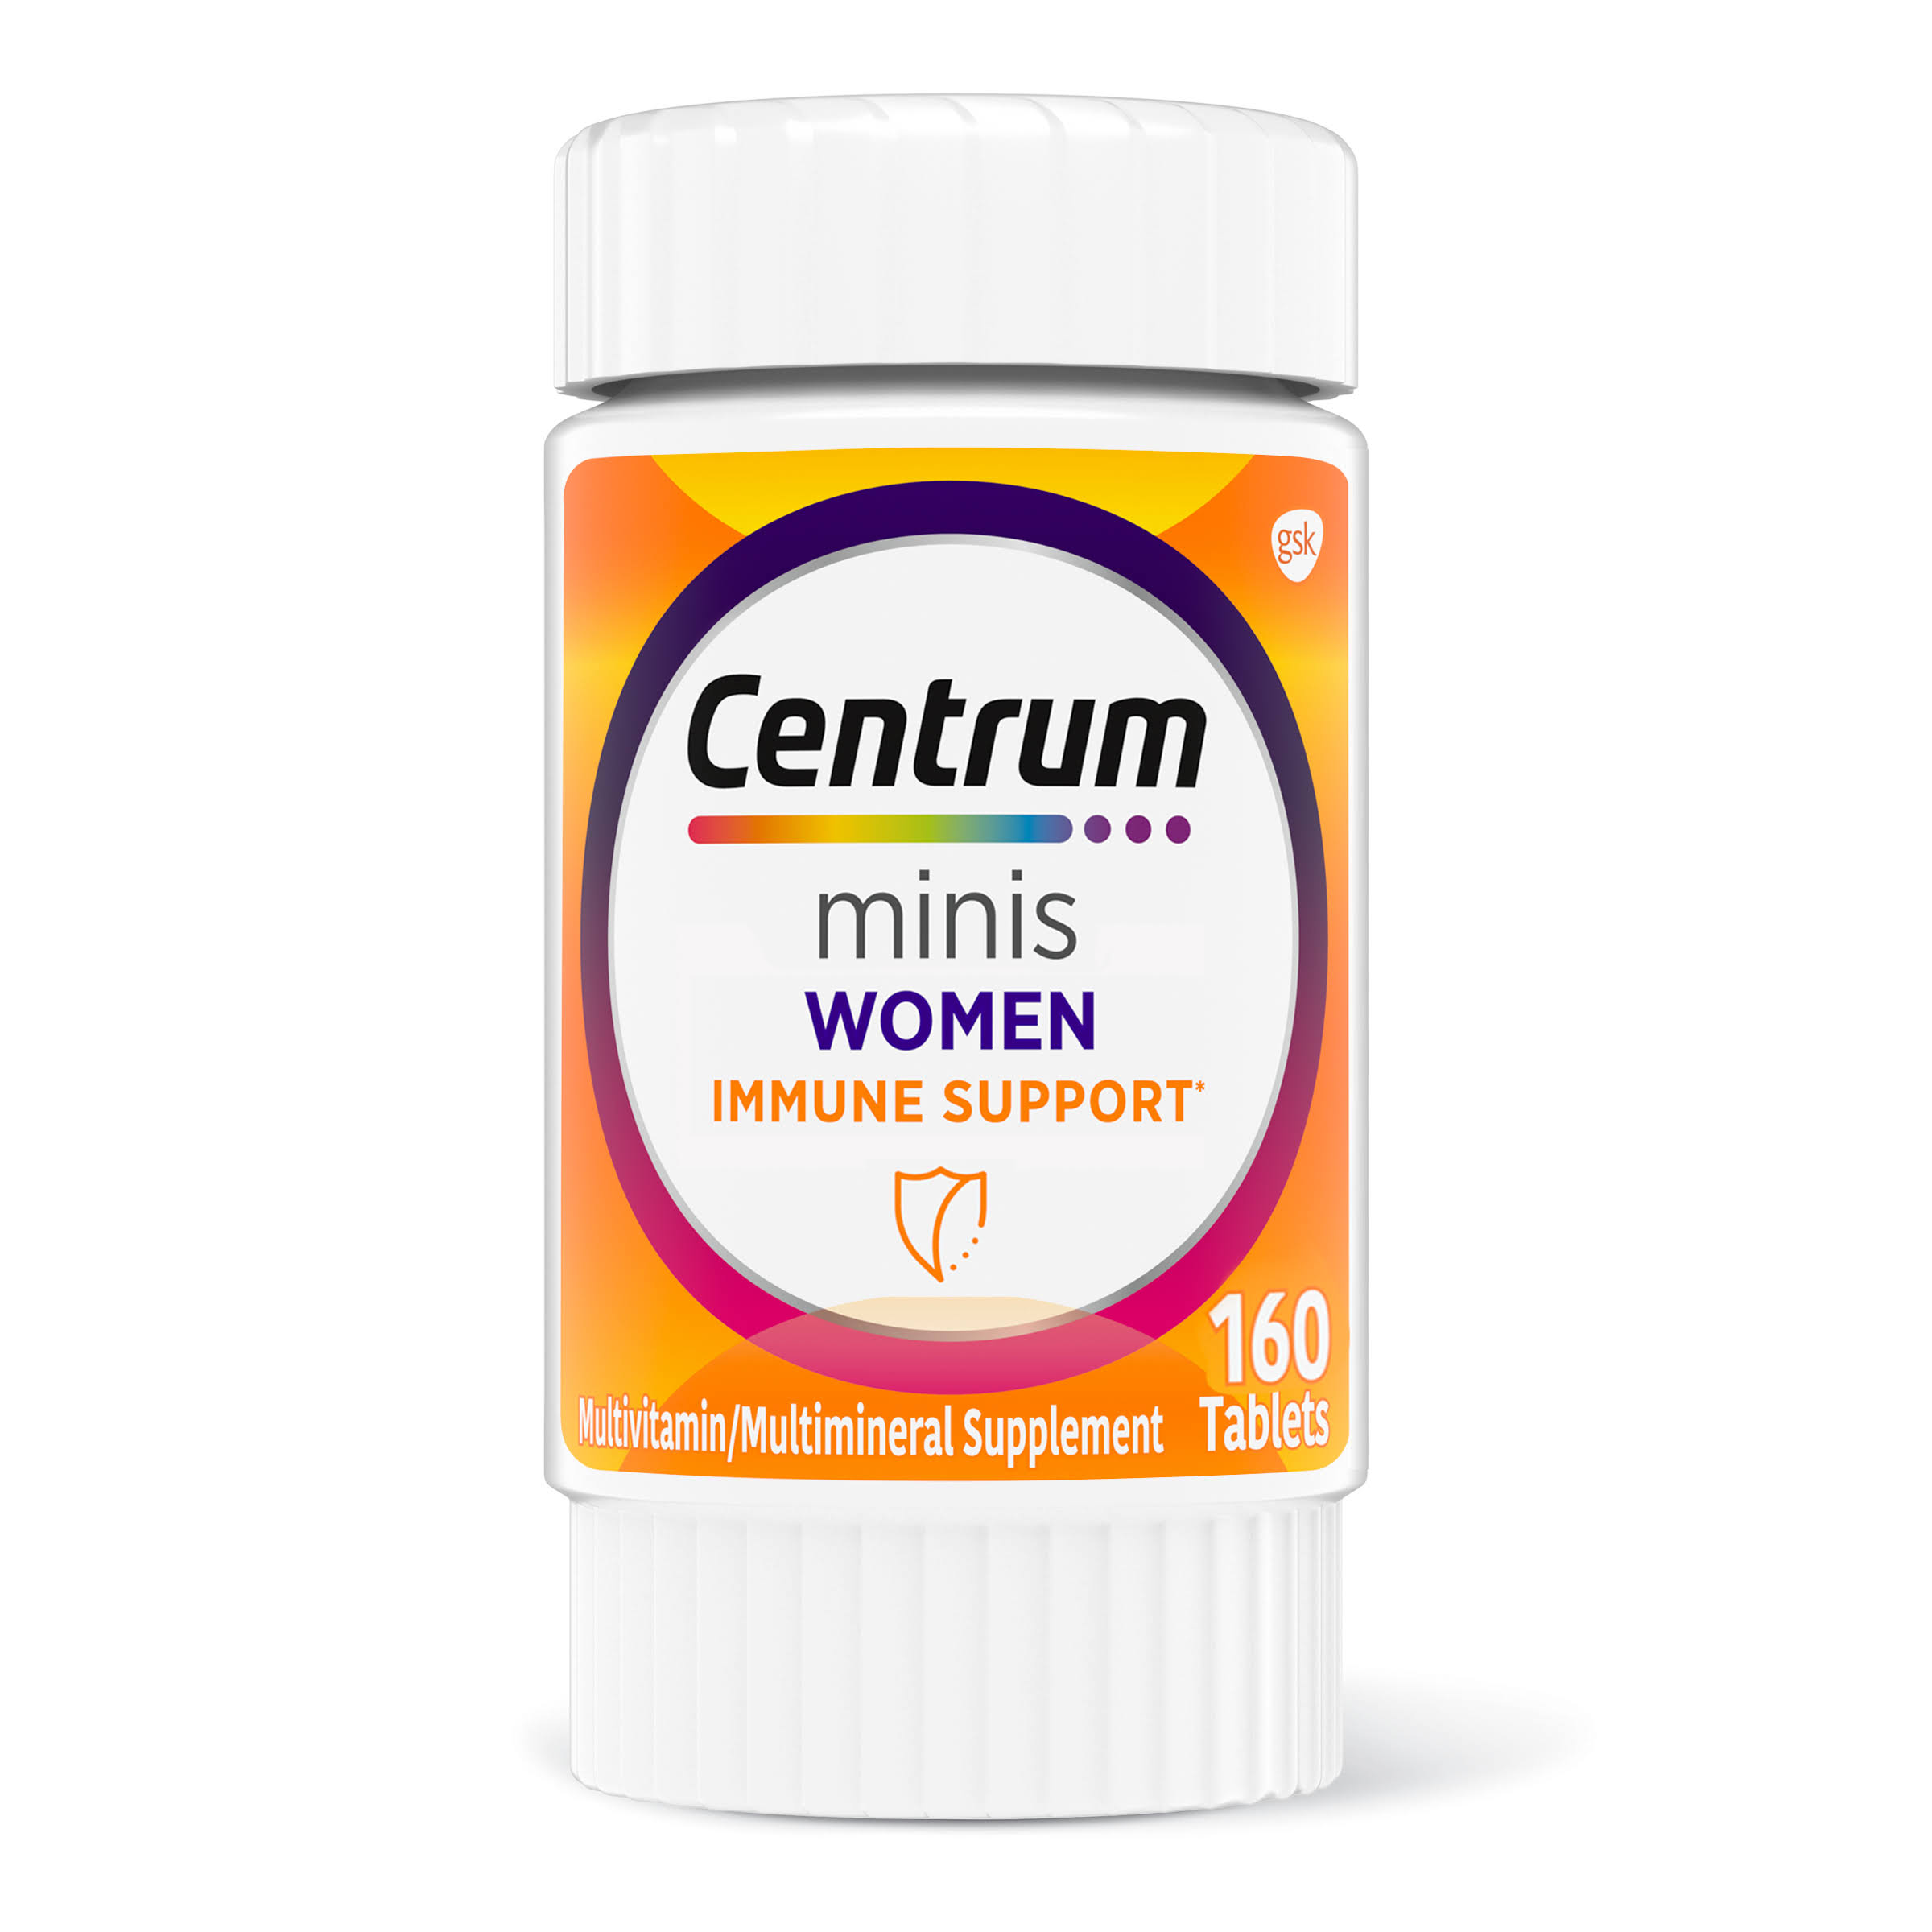 Centrum Minis + Immune Support Tablet For Women, 160 EA